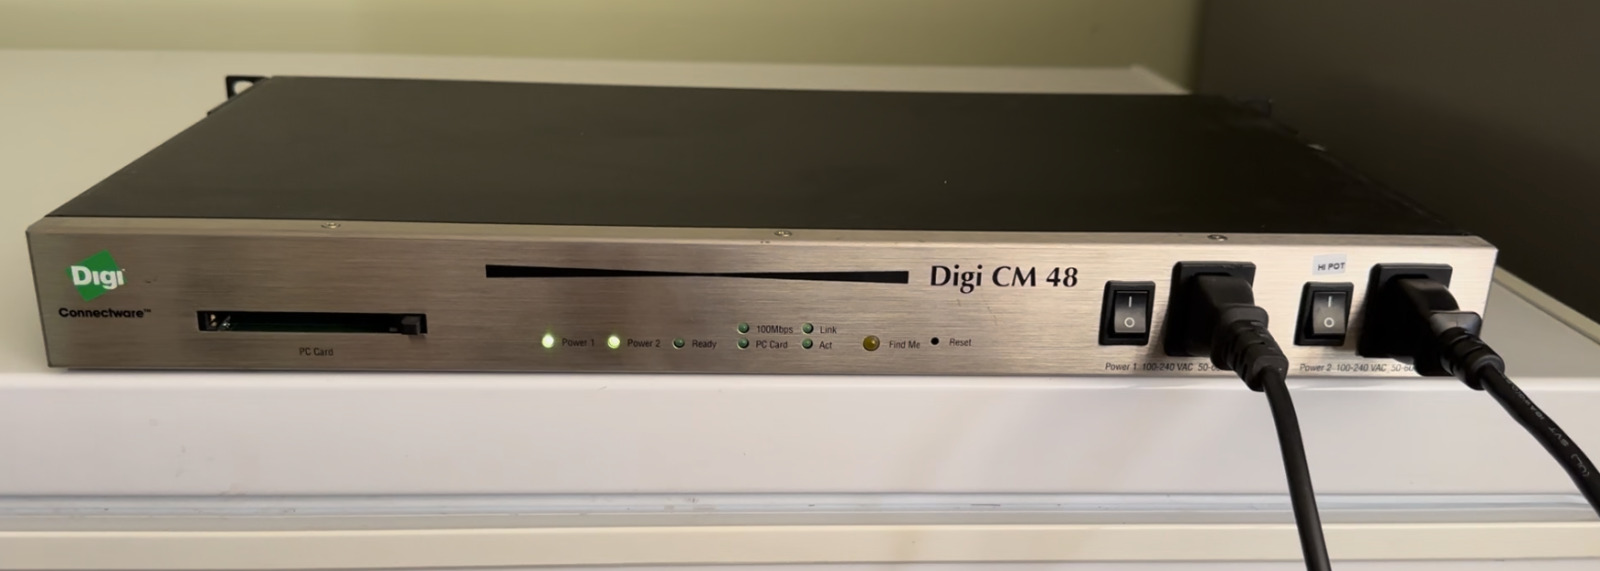 Digi CM48 - Dual PSU